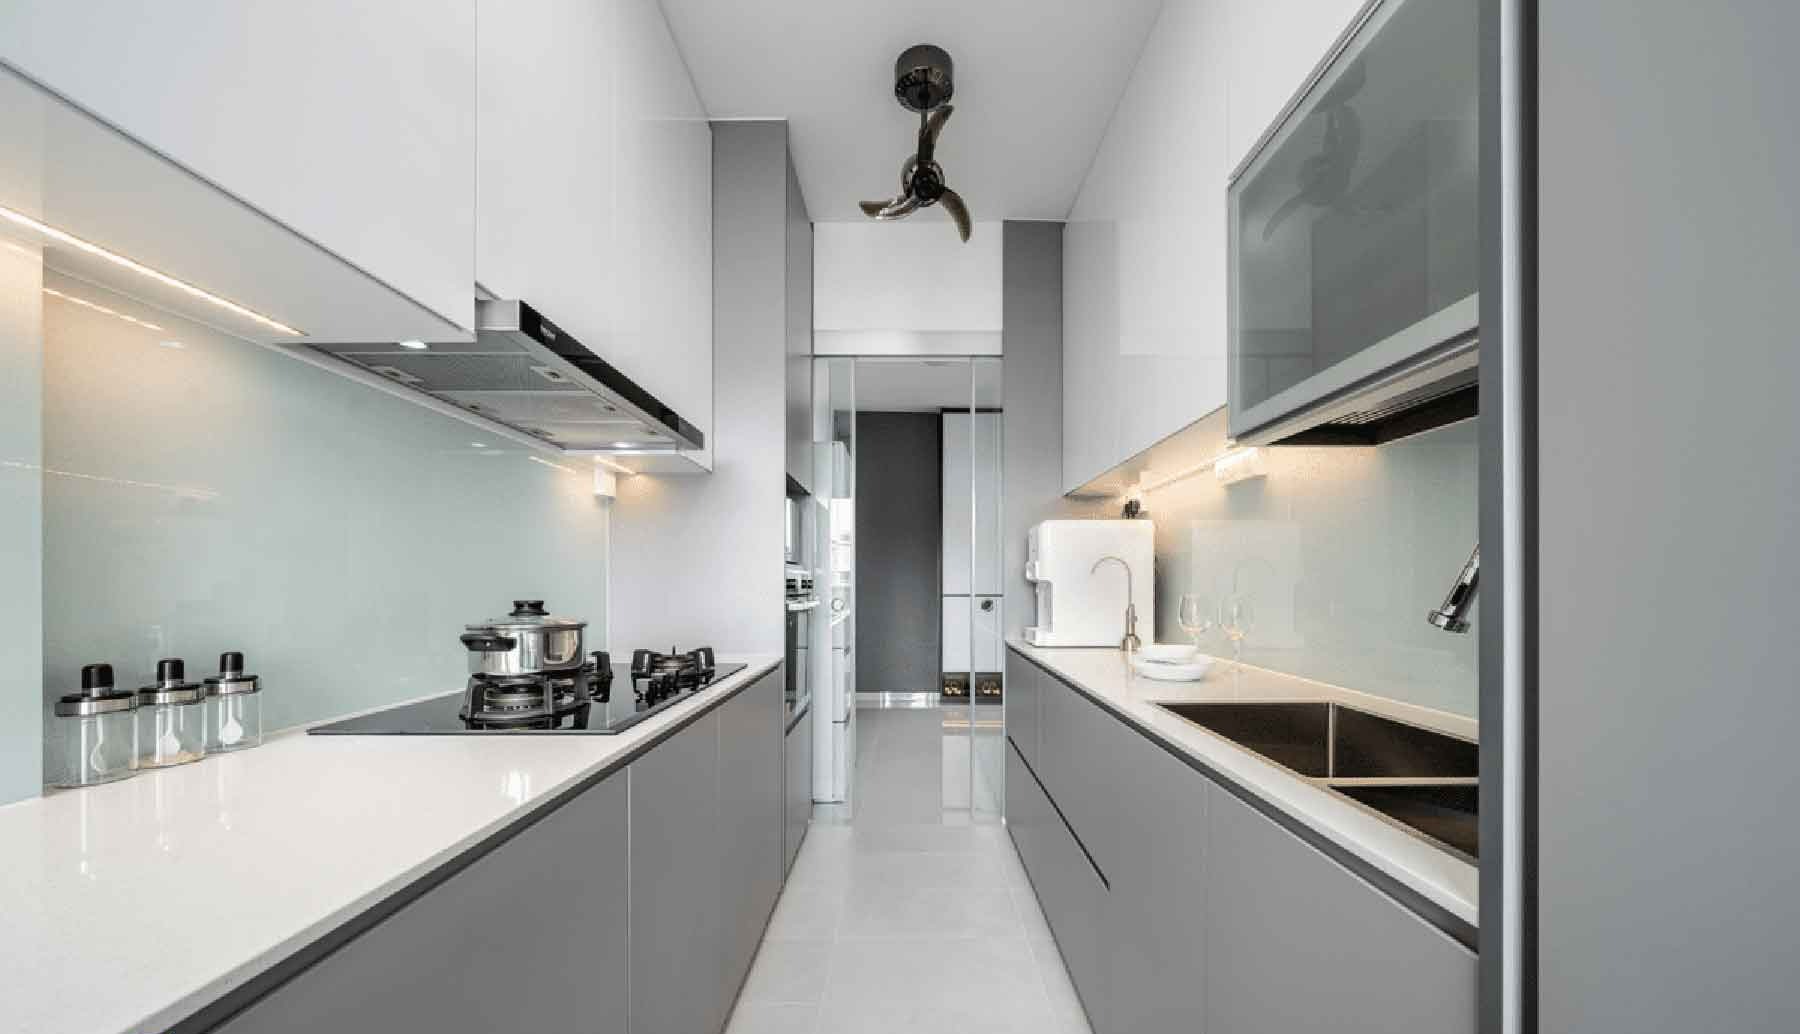 آشپزخانه سفید طوسی - نوسازی آشپزخانه کم هزینه